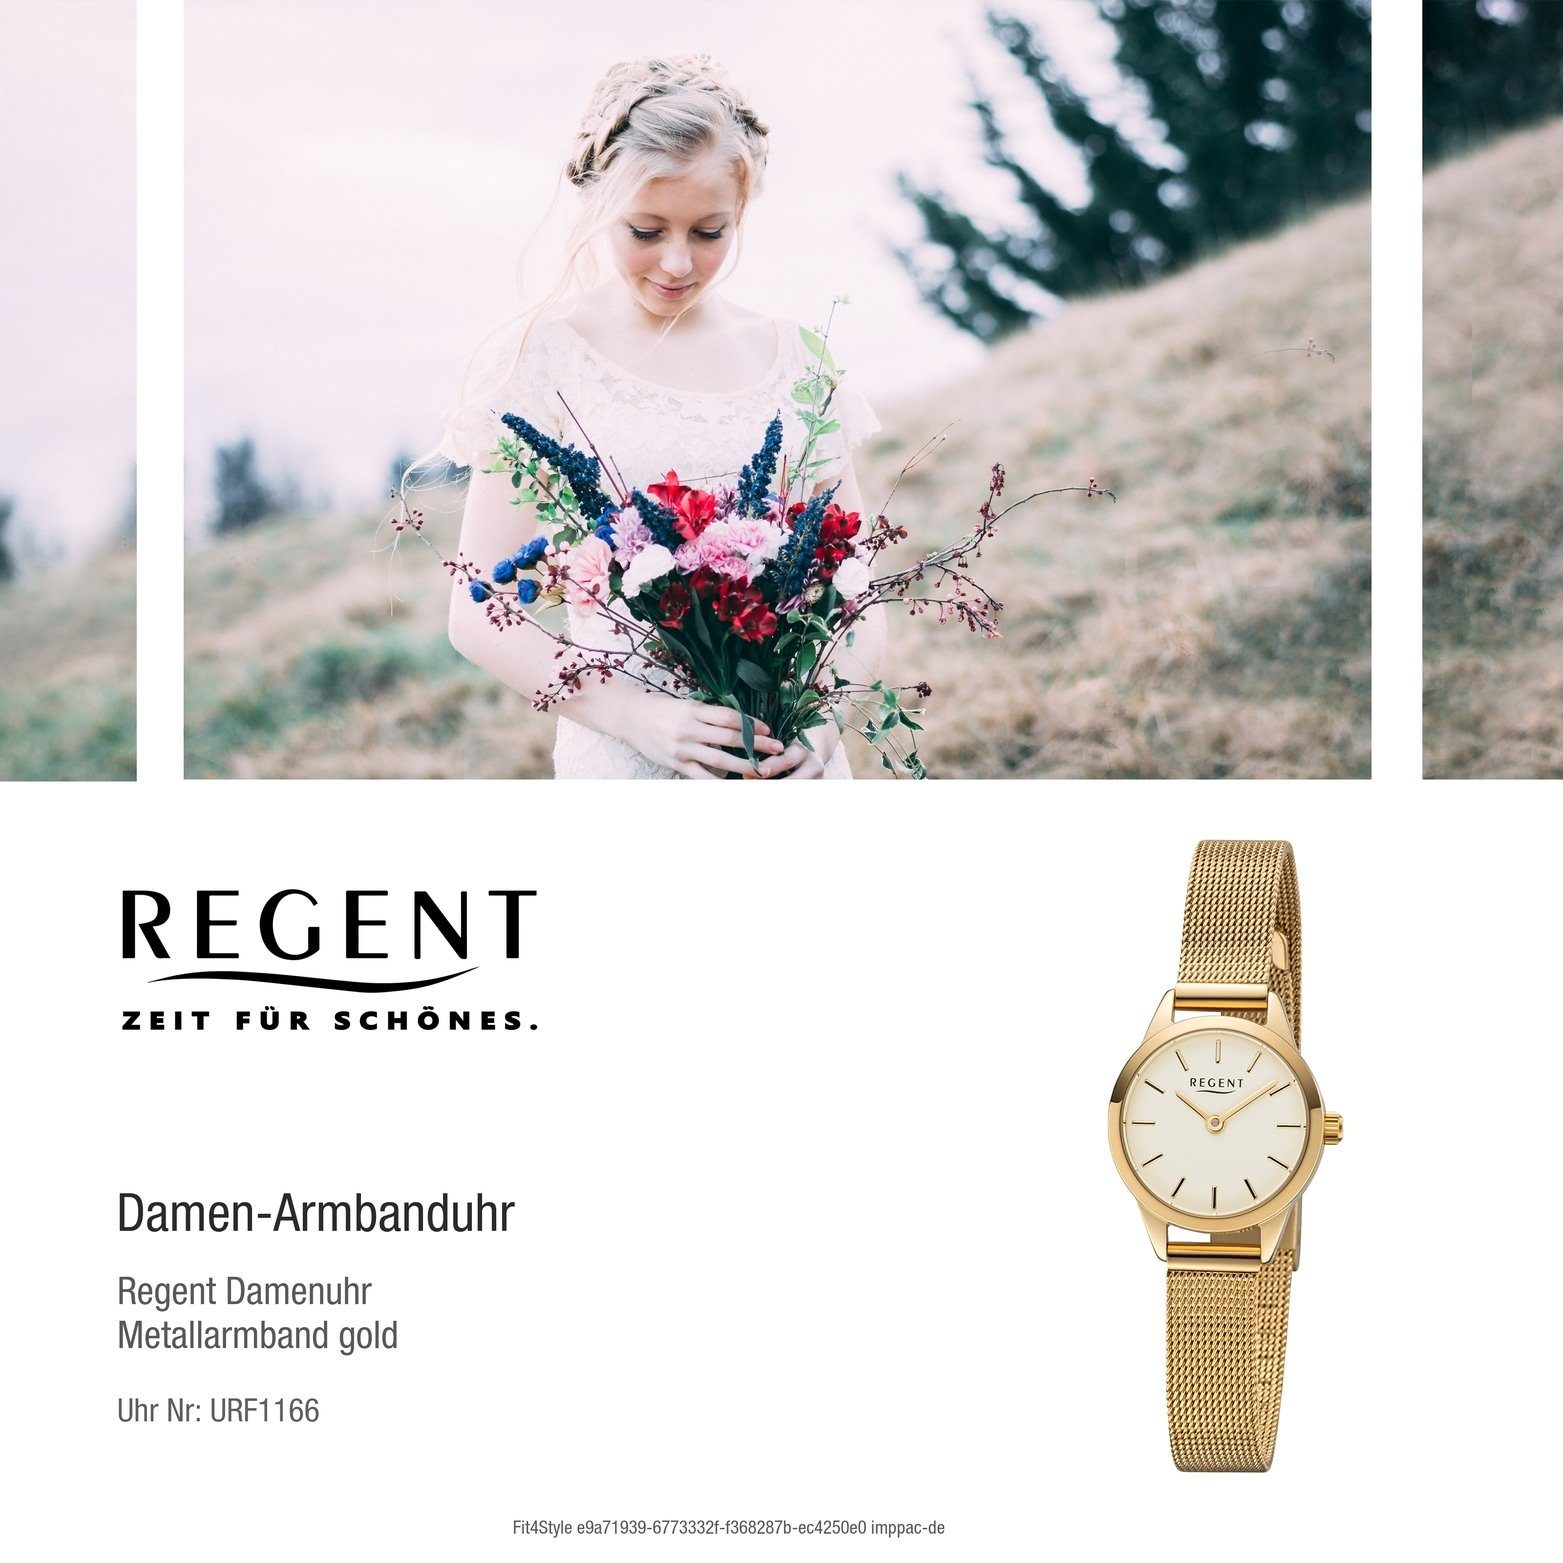 Damenuhr (ca. rundes Quarzuhr Damen klein Metall Gehäuse, Metallarmband gold, 18mm) Uhr Analog, Regent F-1166 Regent